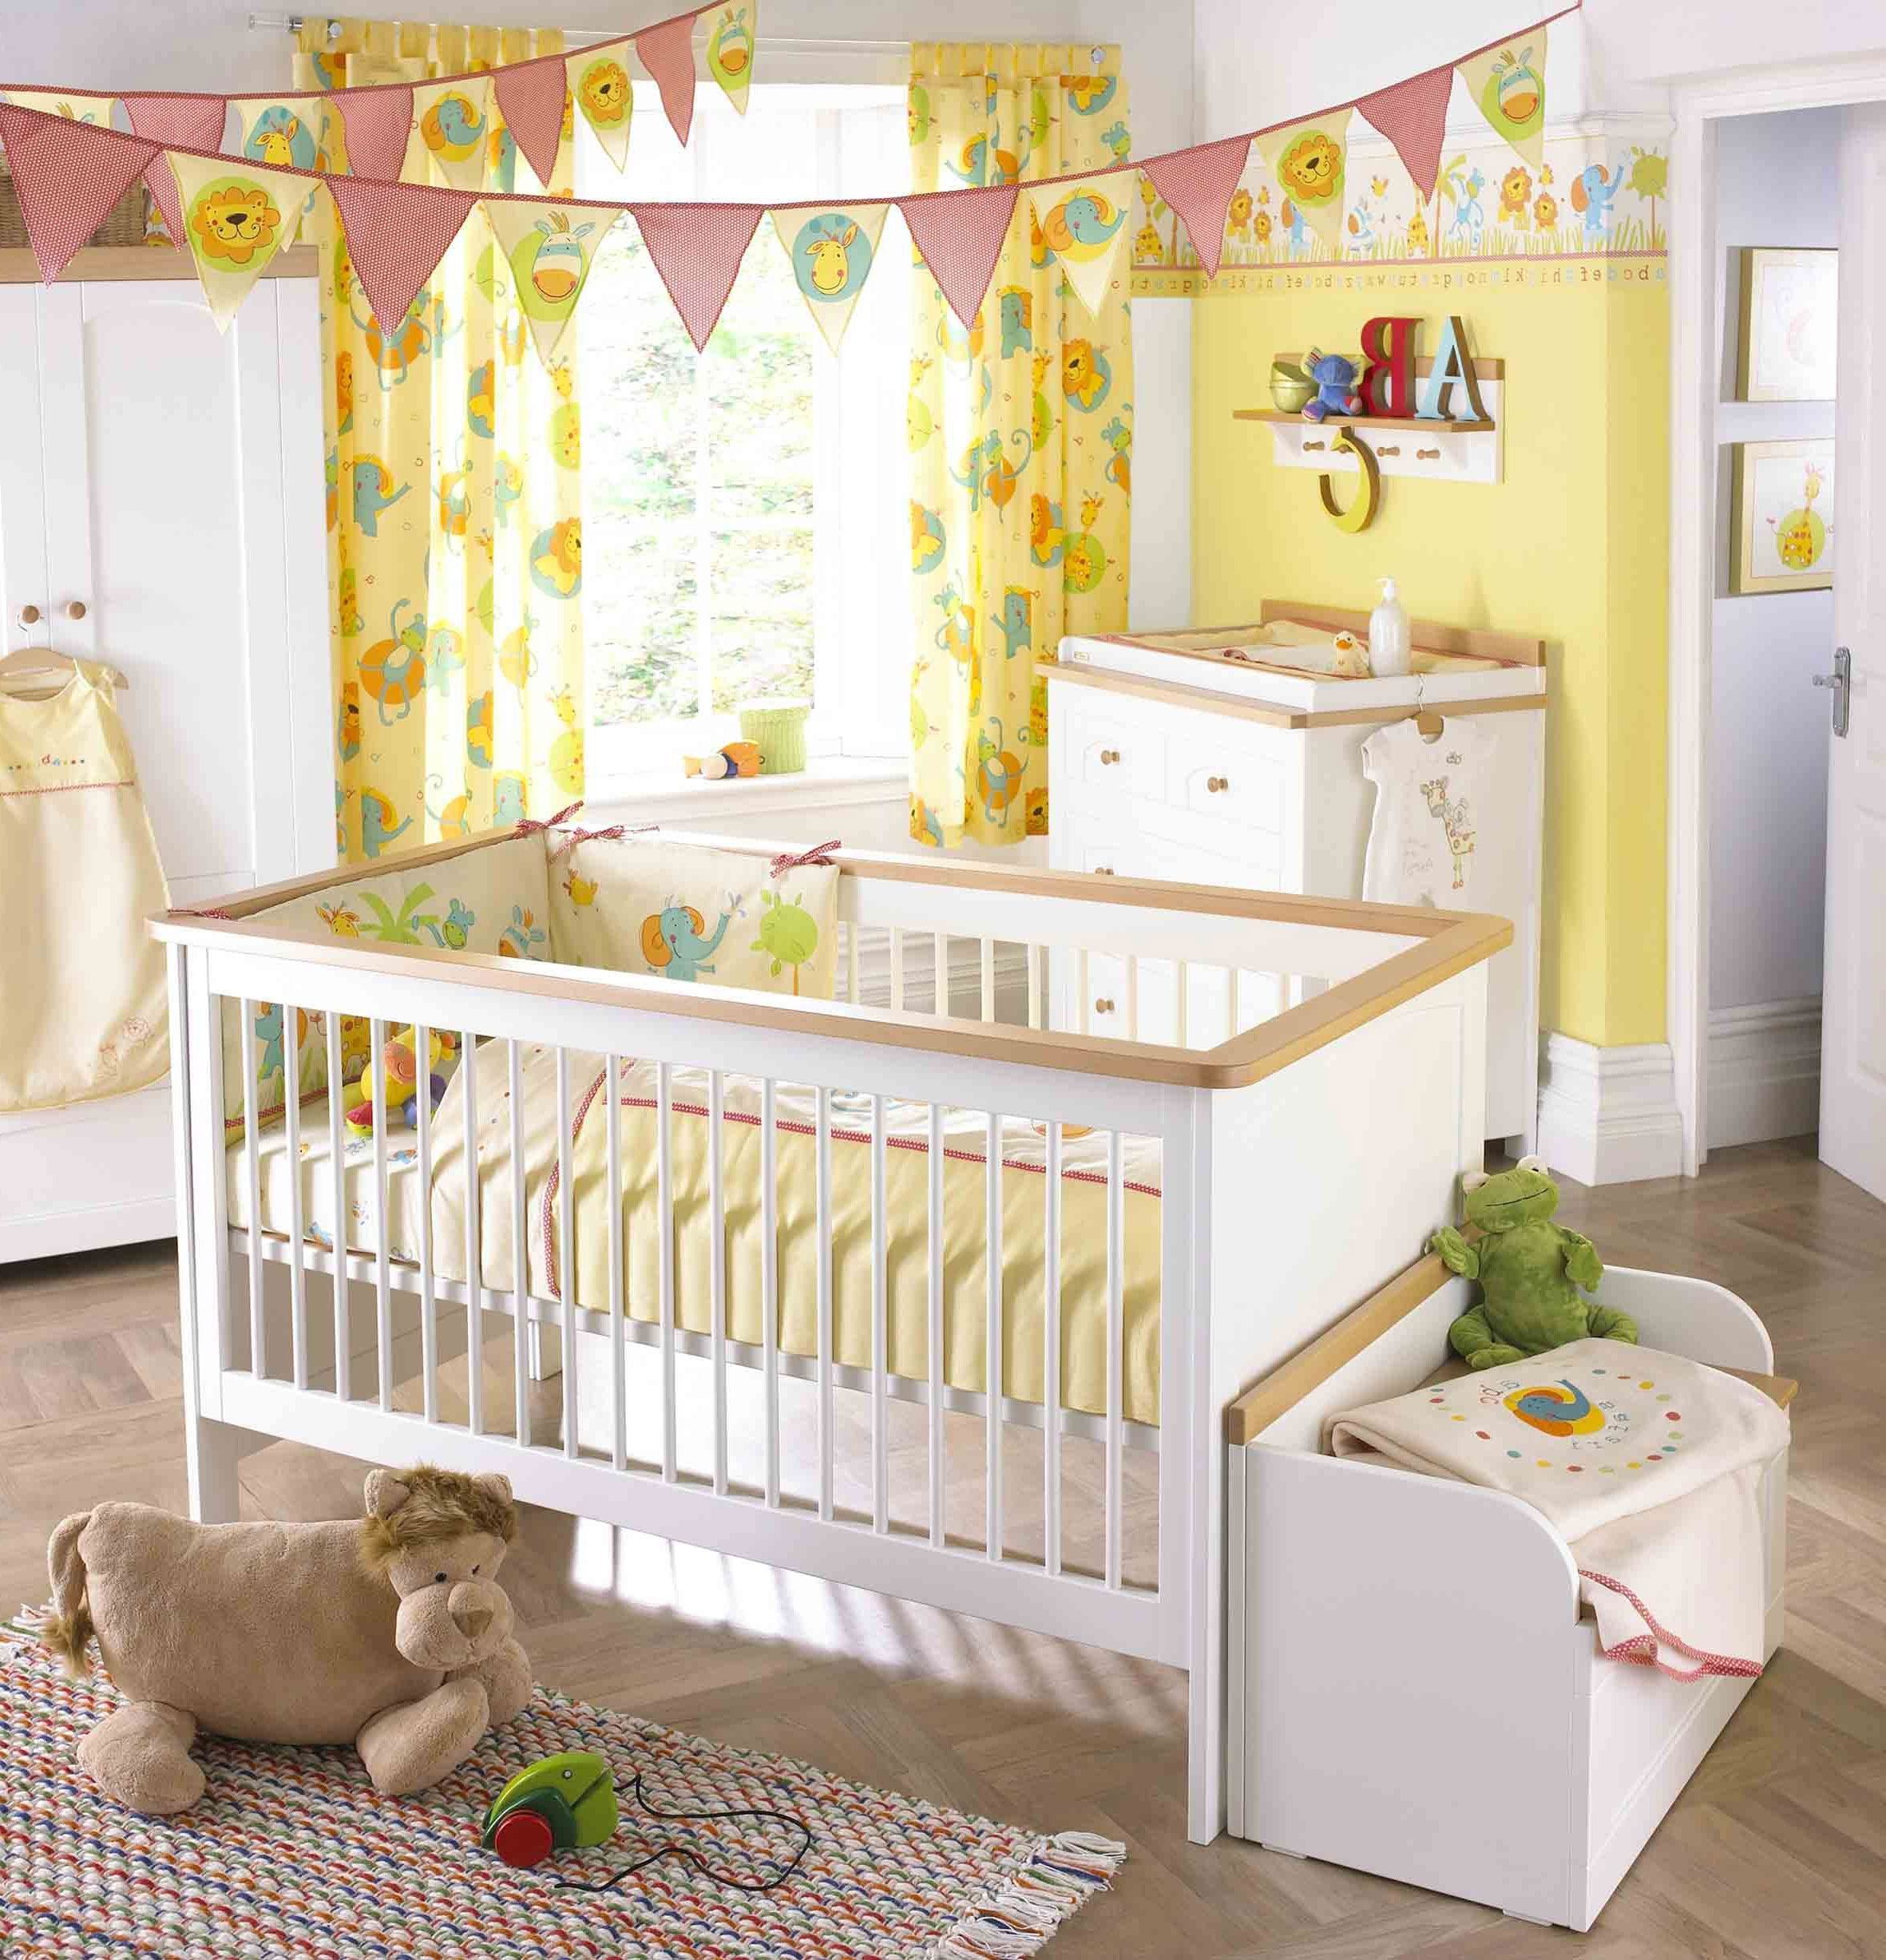 Chambre de bébé sur le thème du safari et accents jaunes